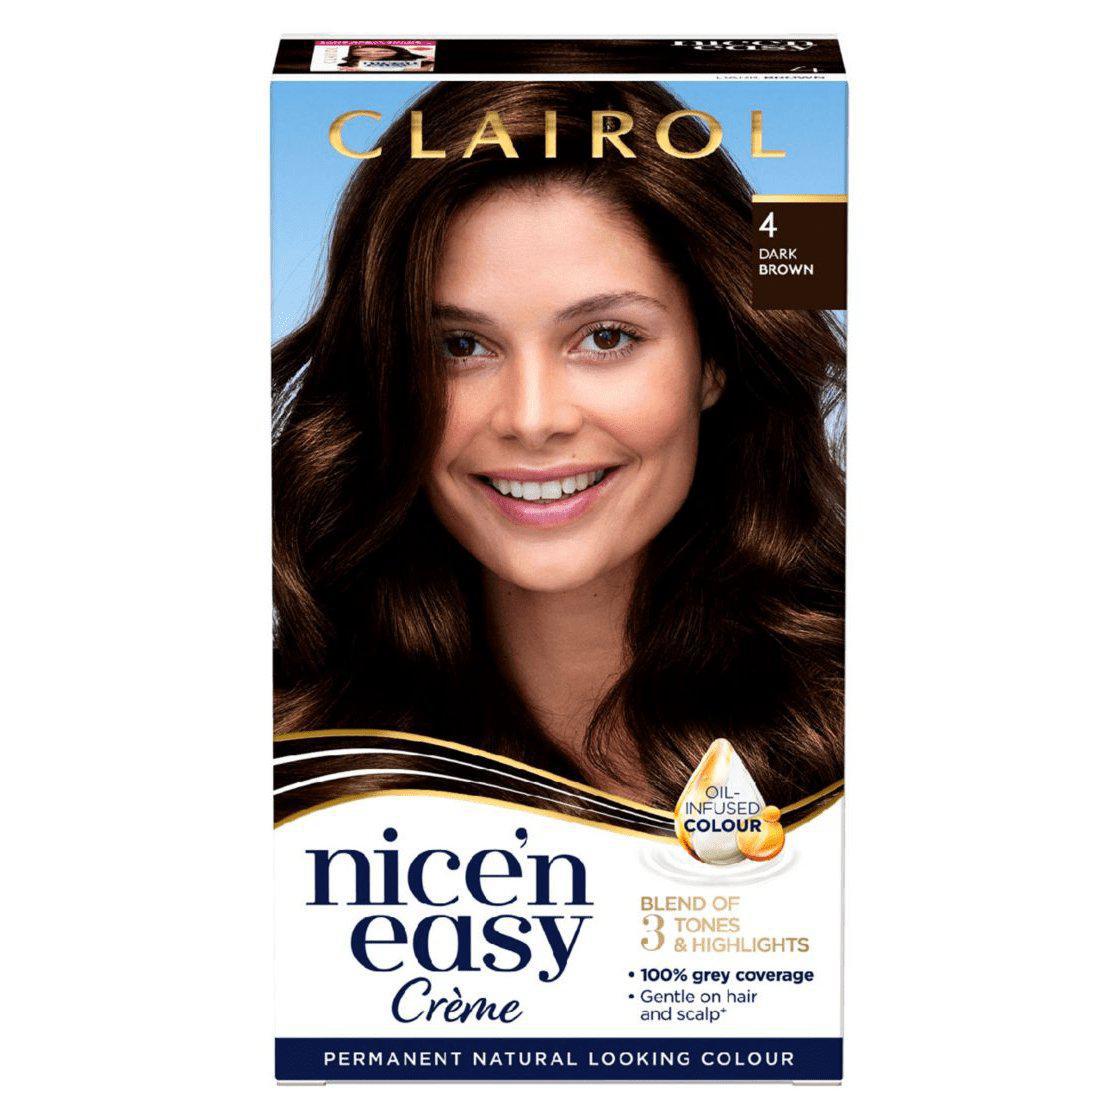 Clairol Nice N Easy Crème Natural Looking Permanent Hair Dye - 4 Dark Brown - Healthxpress.ie